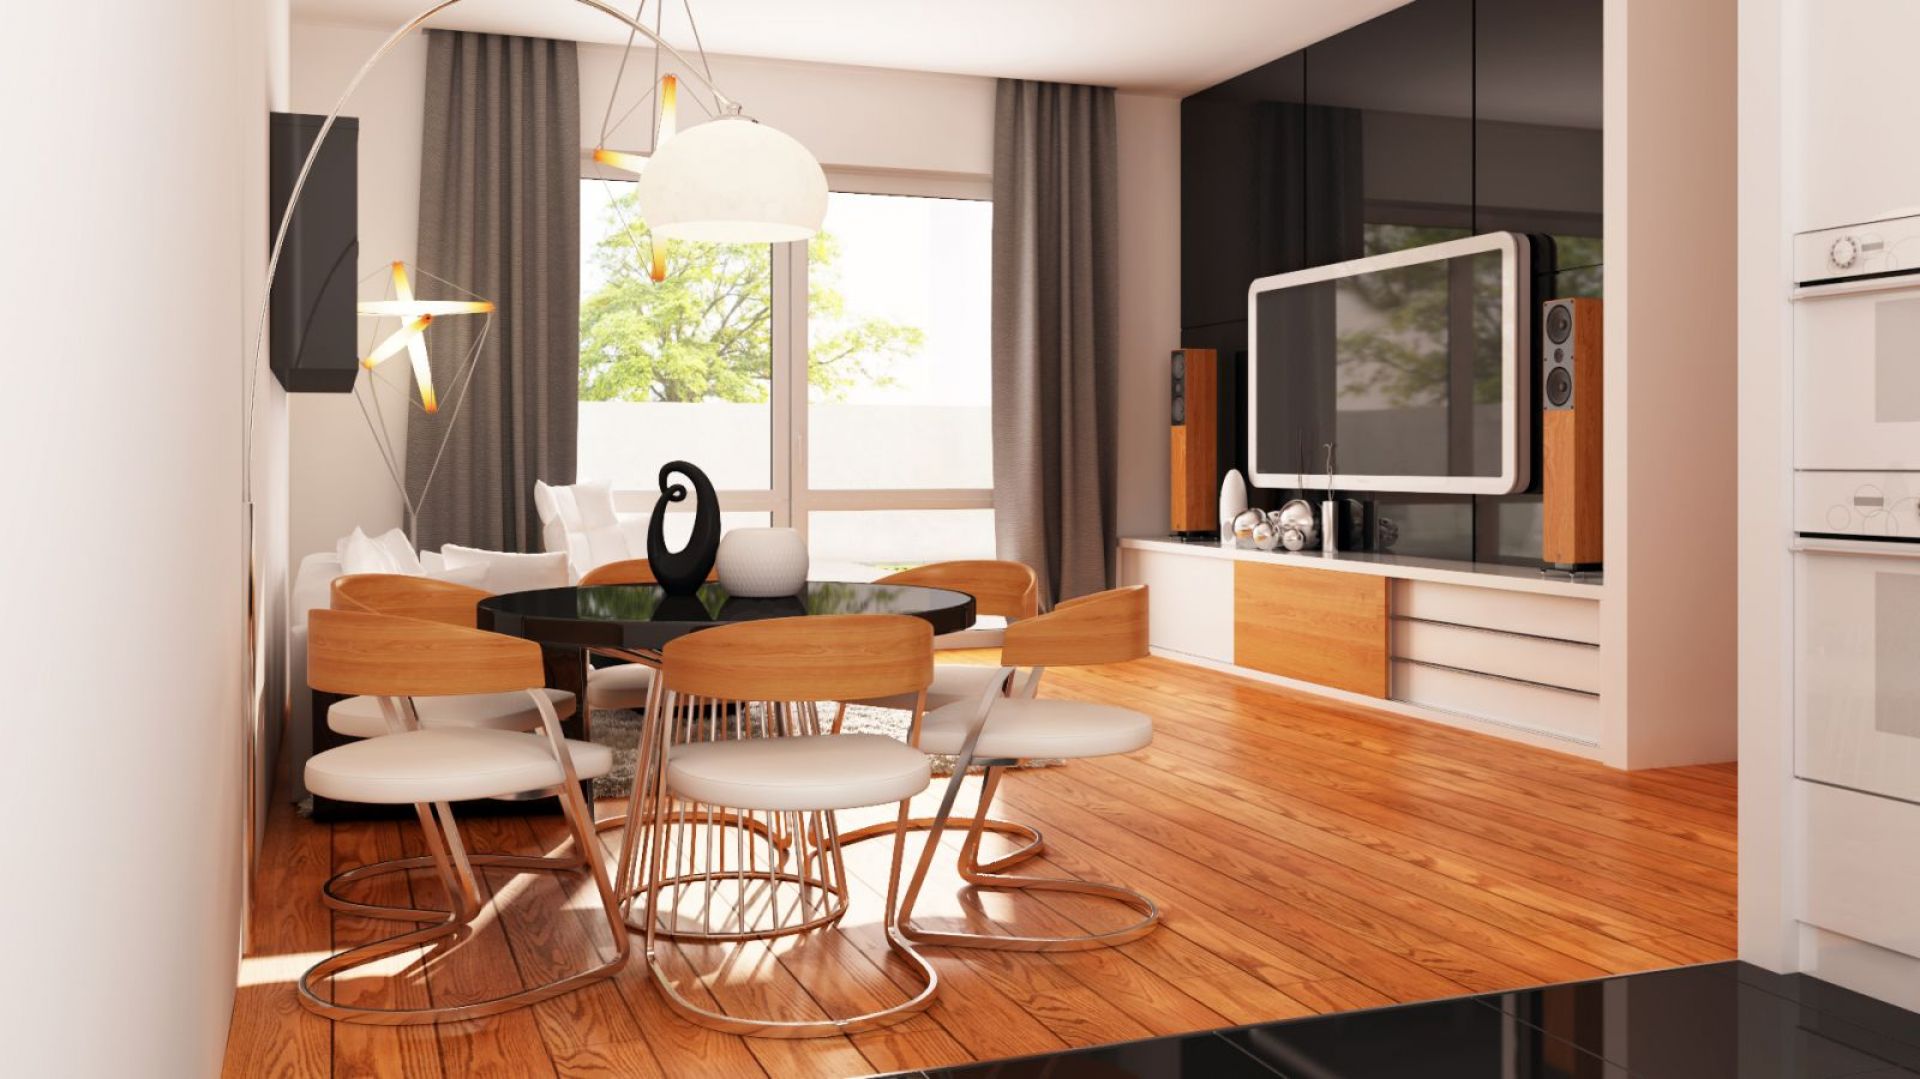 Wnętrze małego domu - nowoczesne połączenie bieli, czerni i drewna